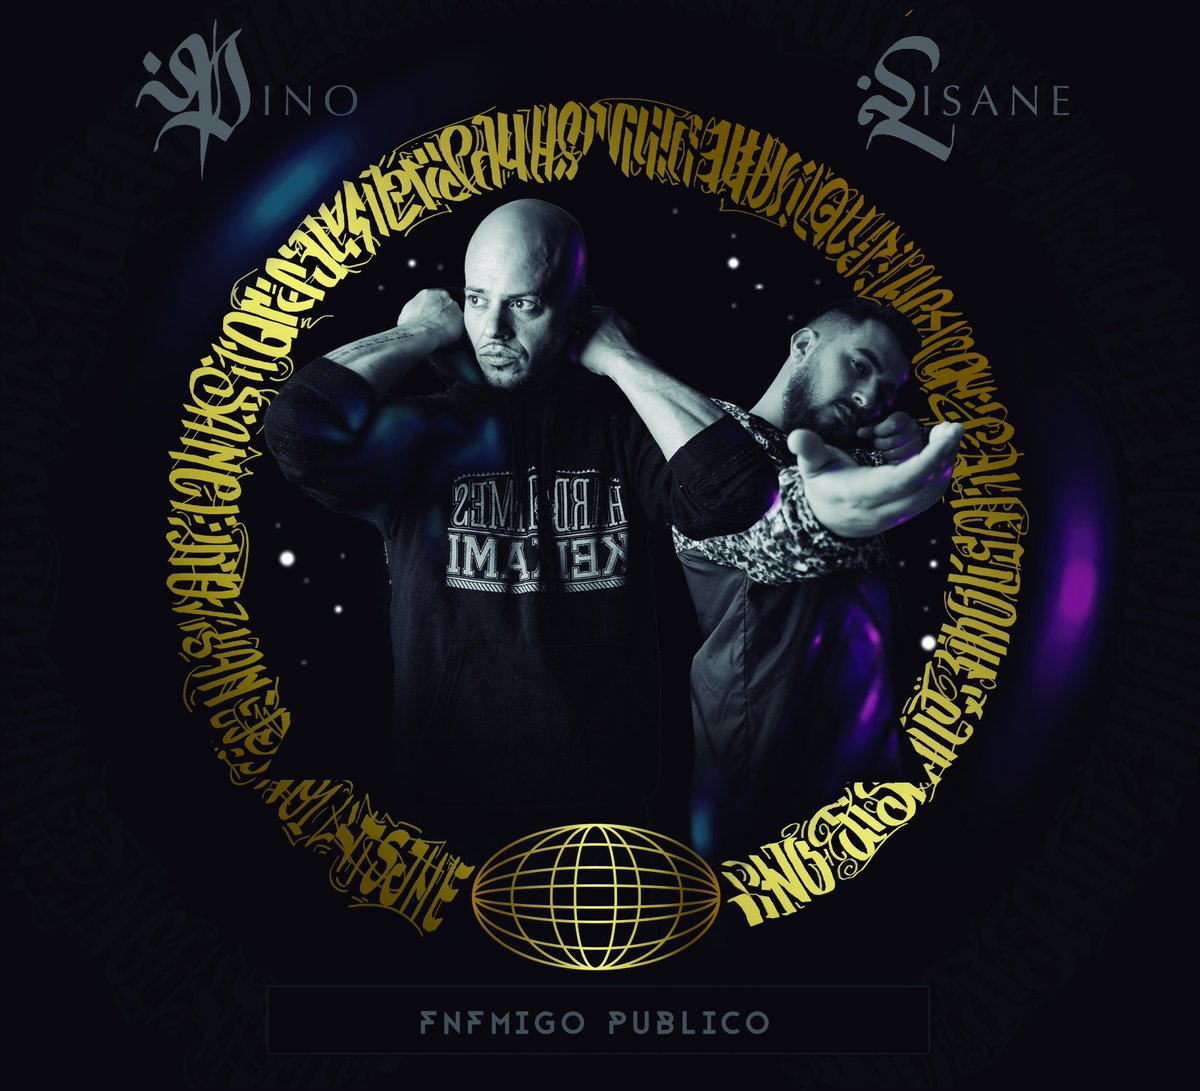 Pino & Lisano - Enemigo público (Tracklist)